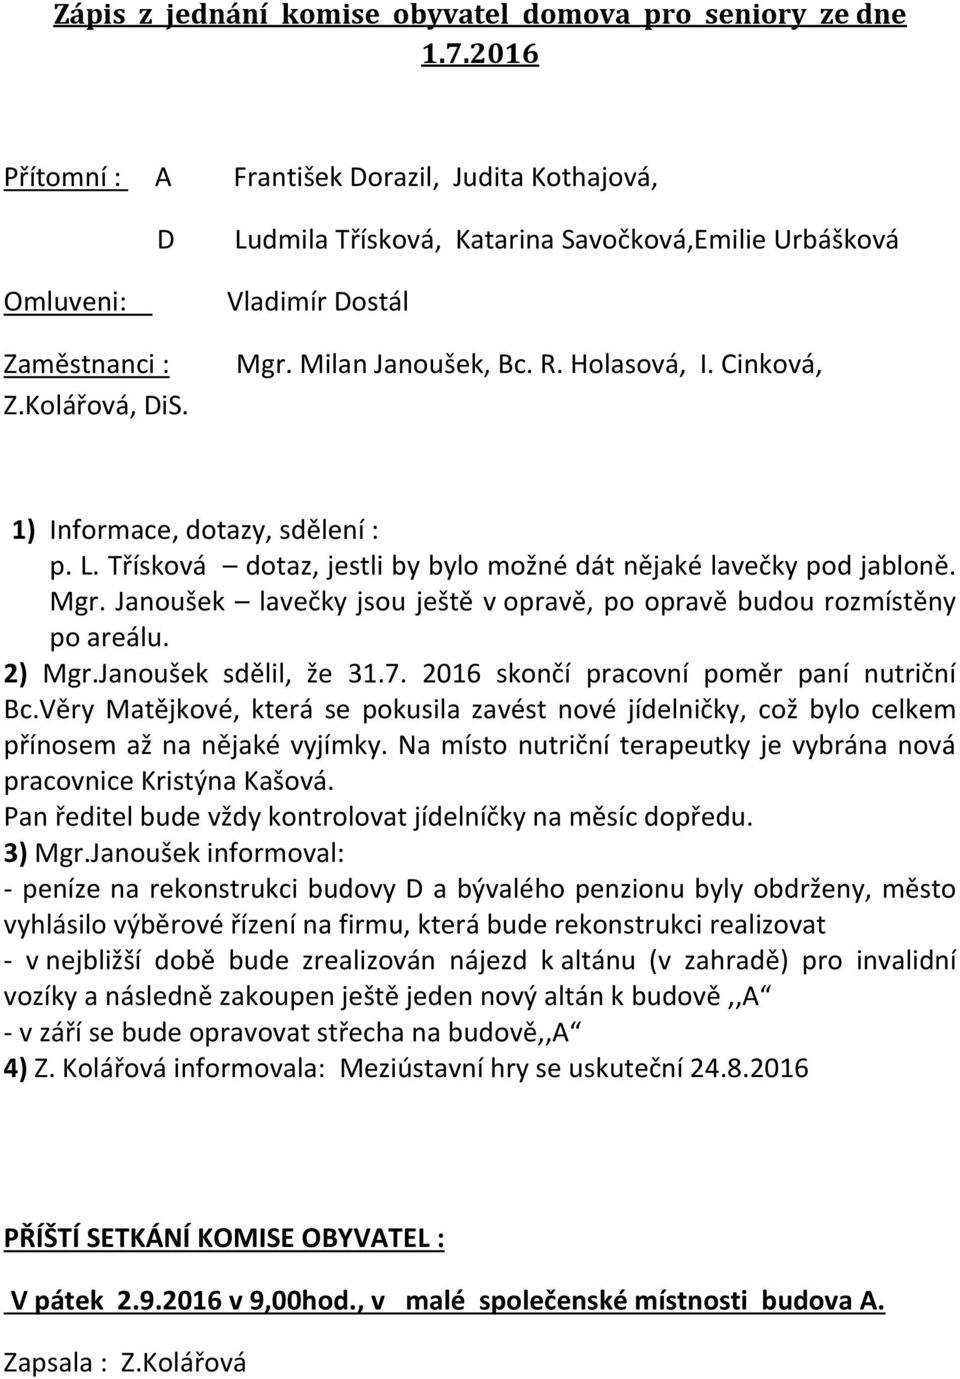 2) Mgr.Janoušek sdělil, že 31.7. 2016 skončí pracovní poměr paní nutriční Bc.Věry Matějkové, která se pokusila zavést nové jídelničky, což bylo celkem přínosem až na nějaké vyjímky.